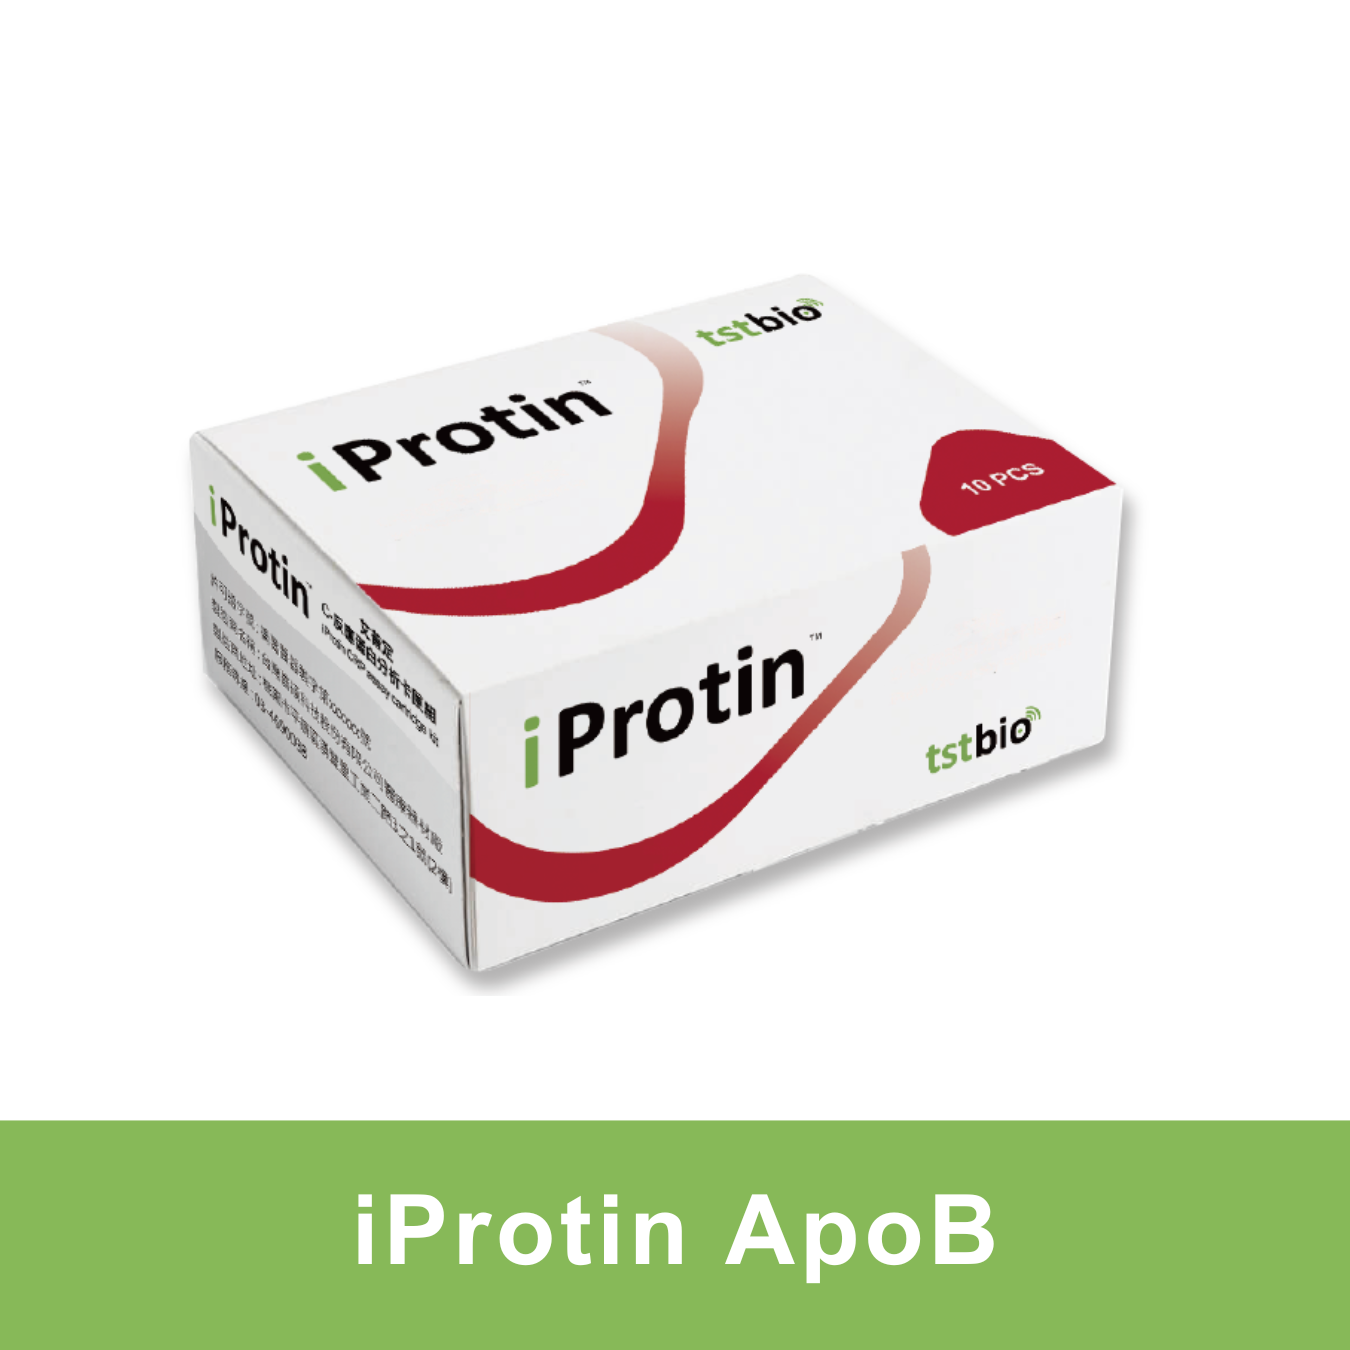 Apolipoprotein B assay cartridge kit